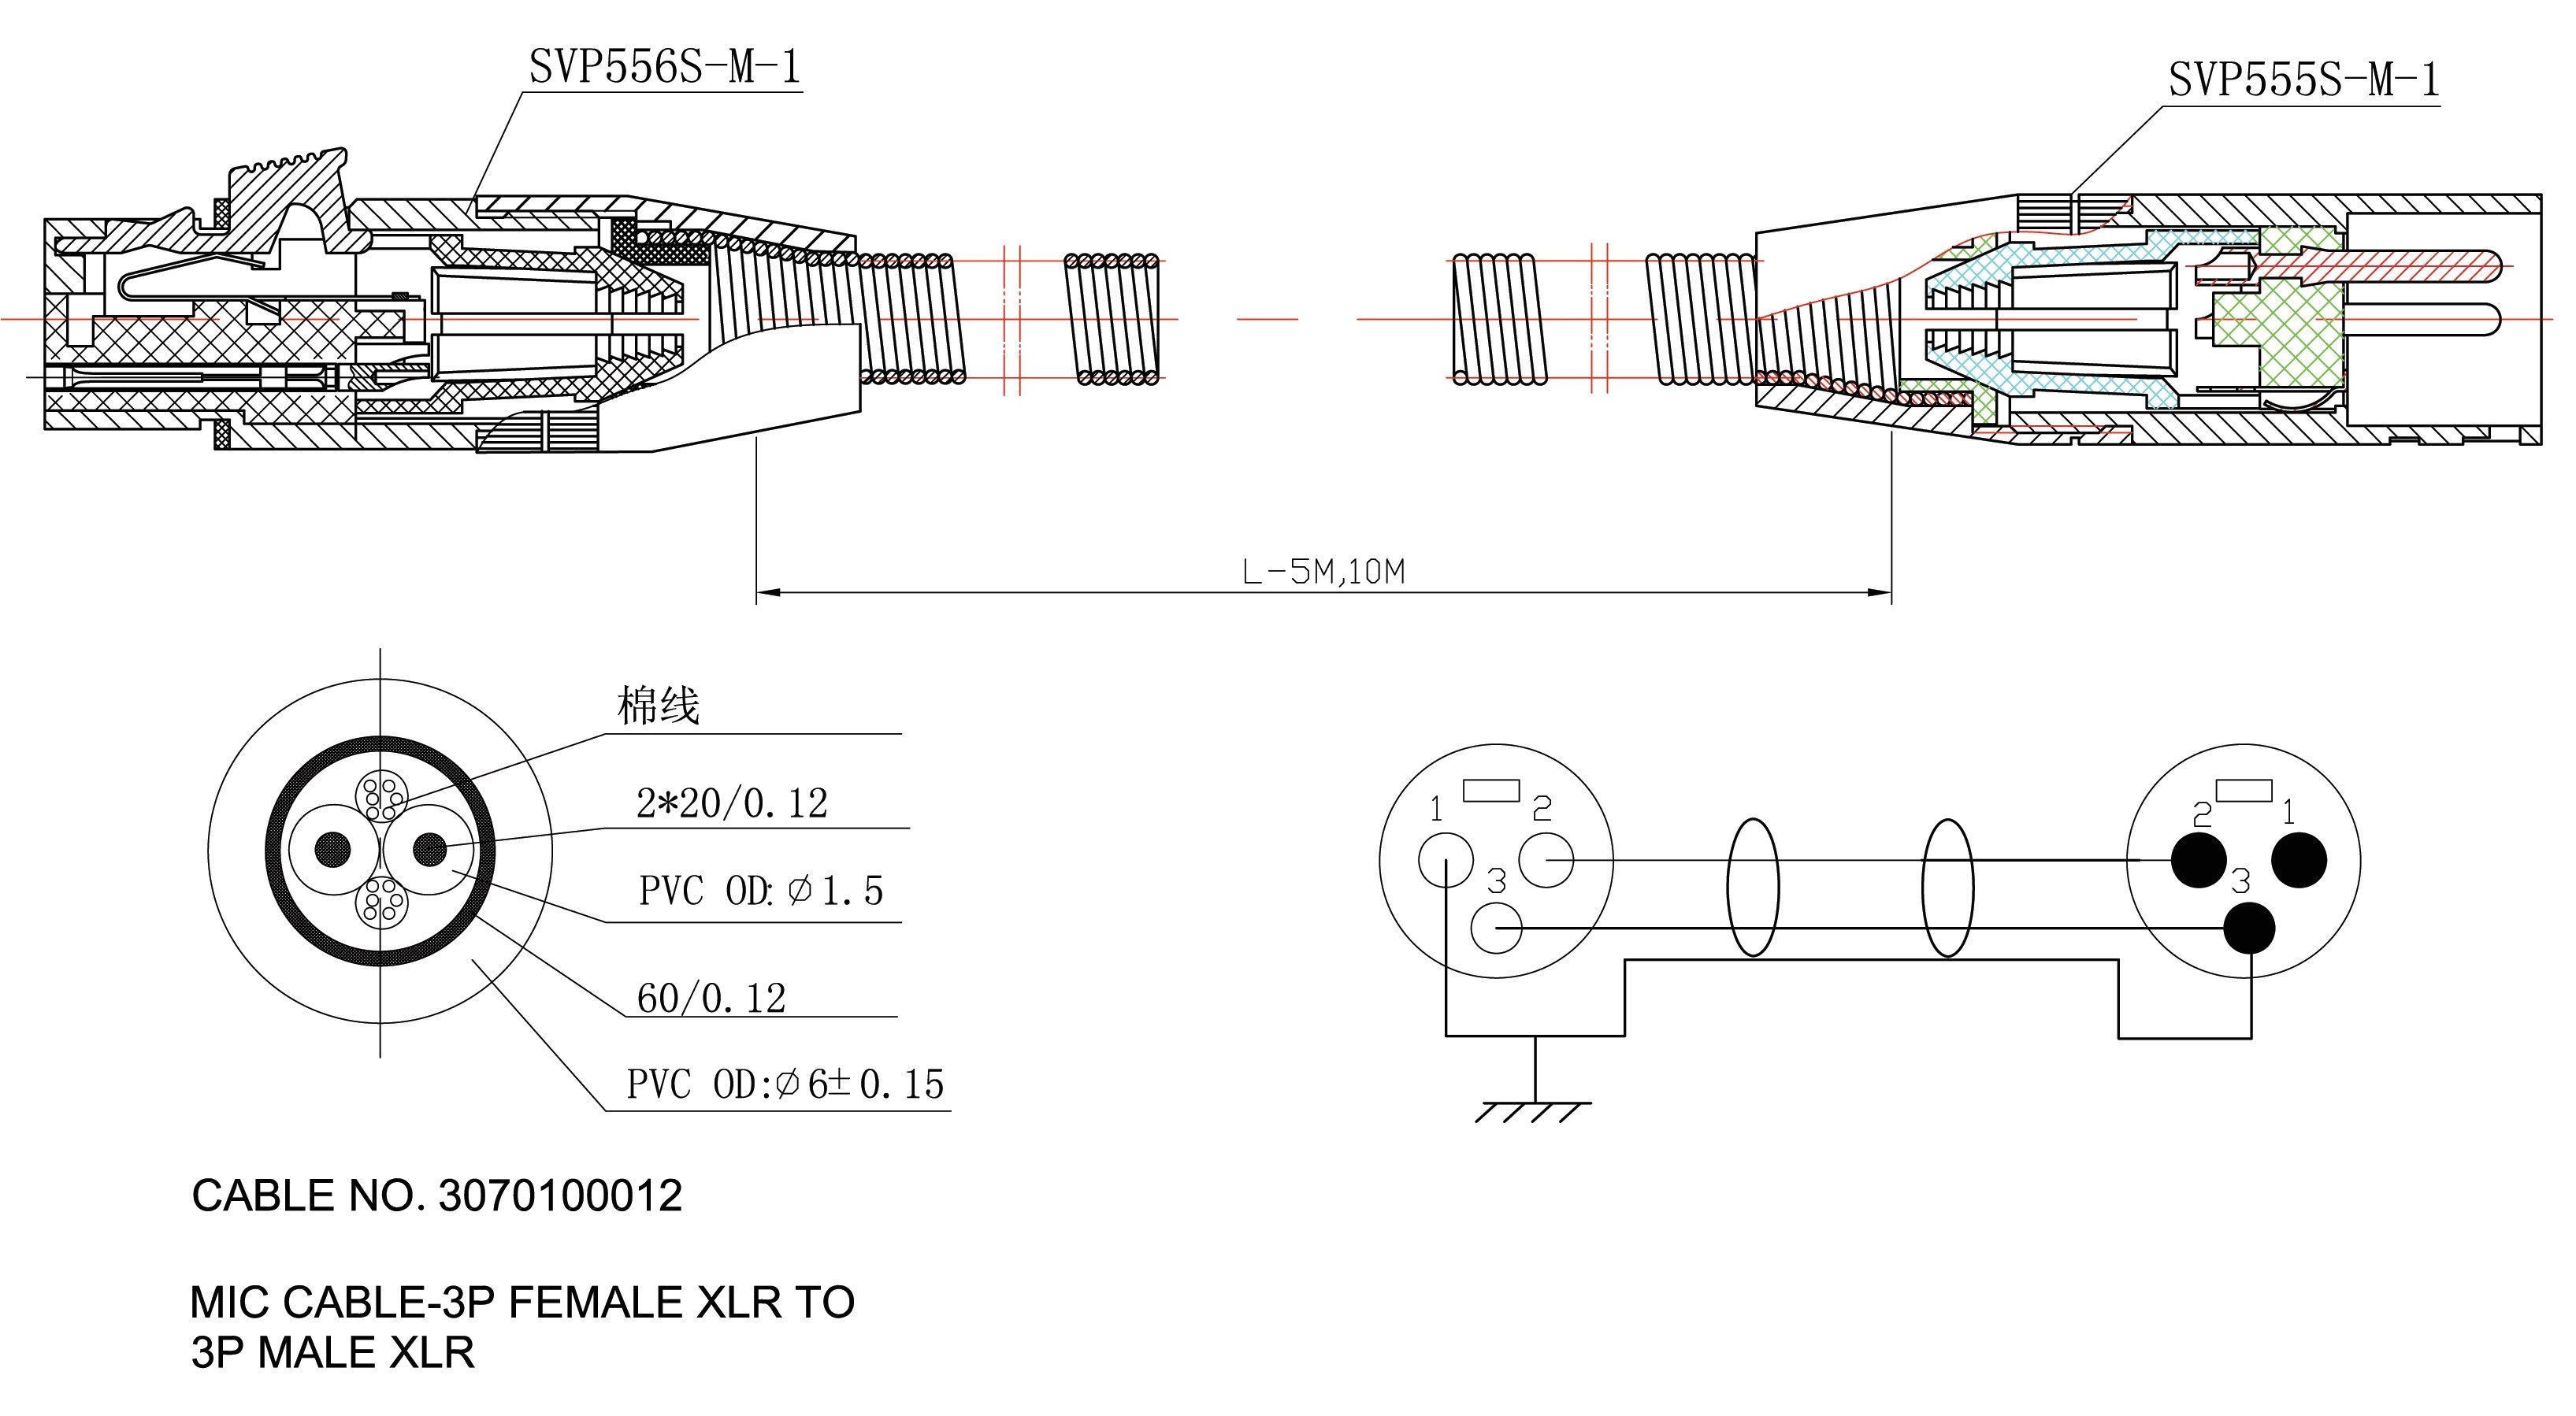 pioneer deh x6800bs wiring diagram best of cat6 straight through cat6 straight through wiring diagram